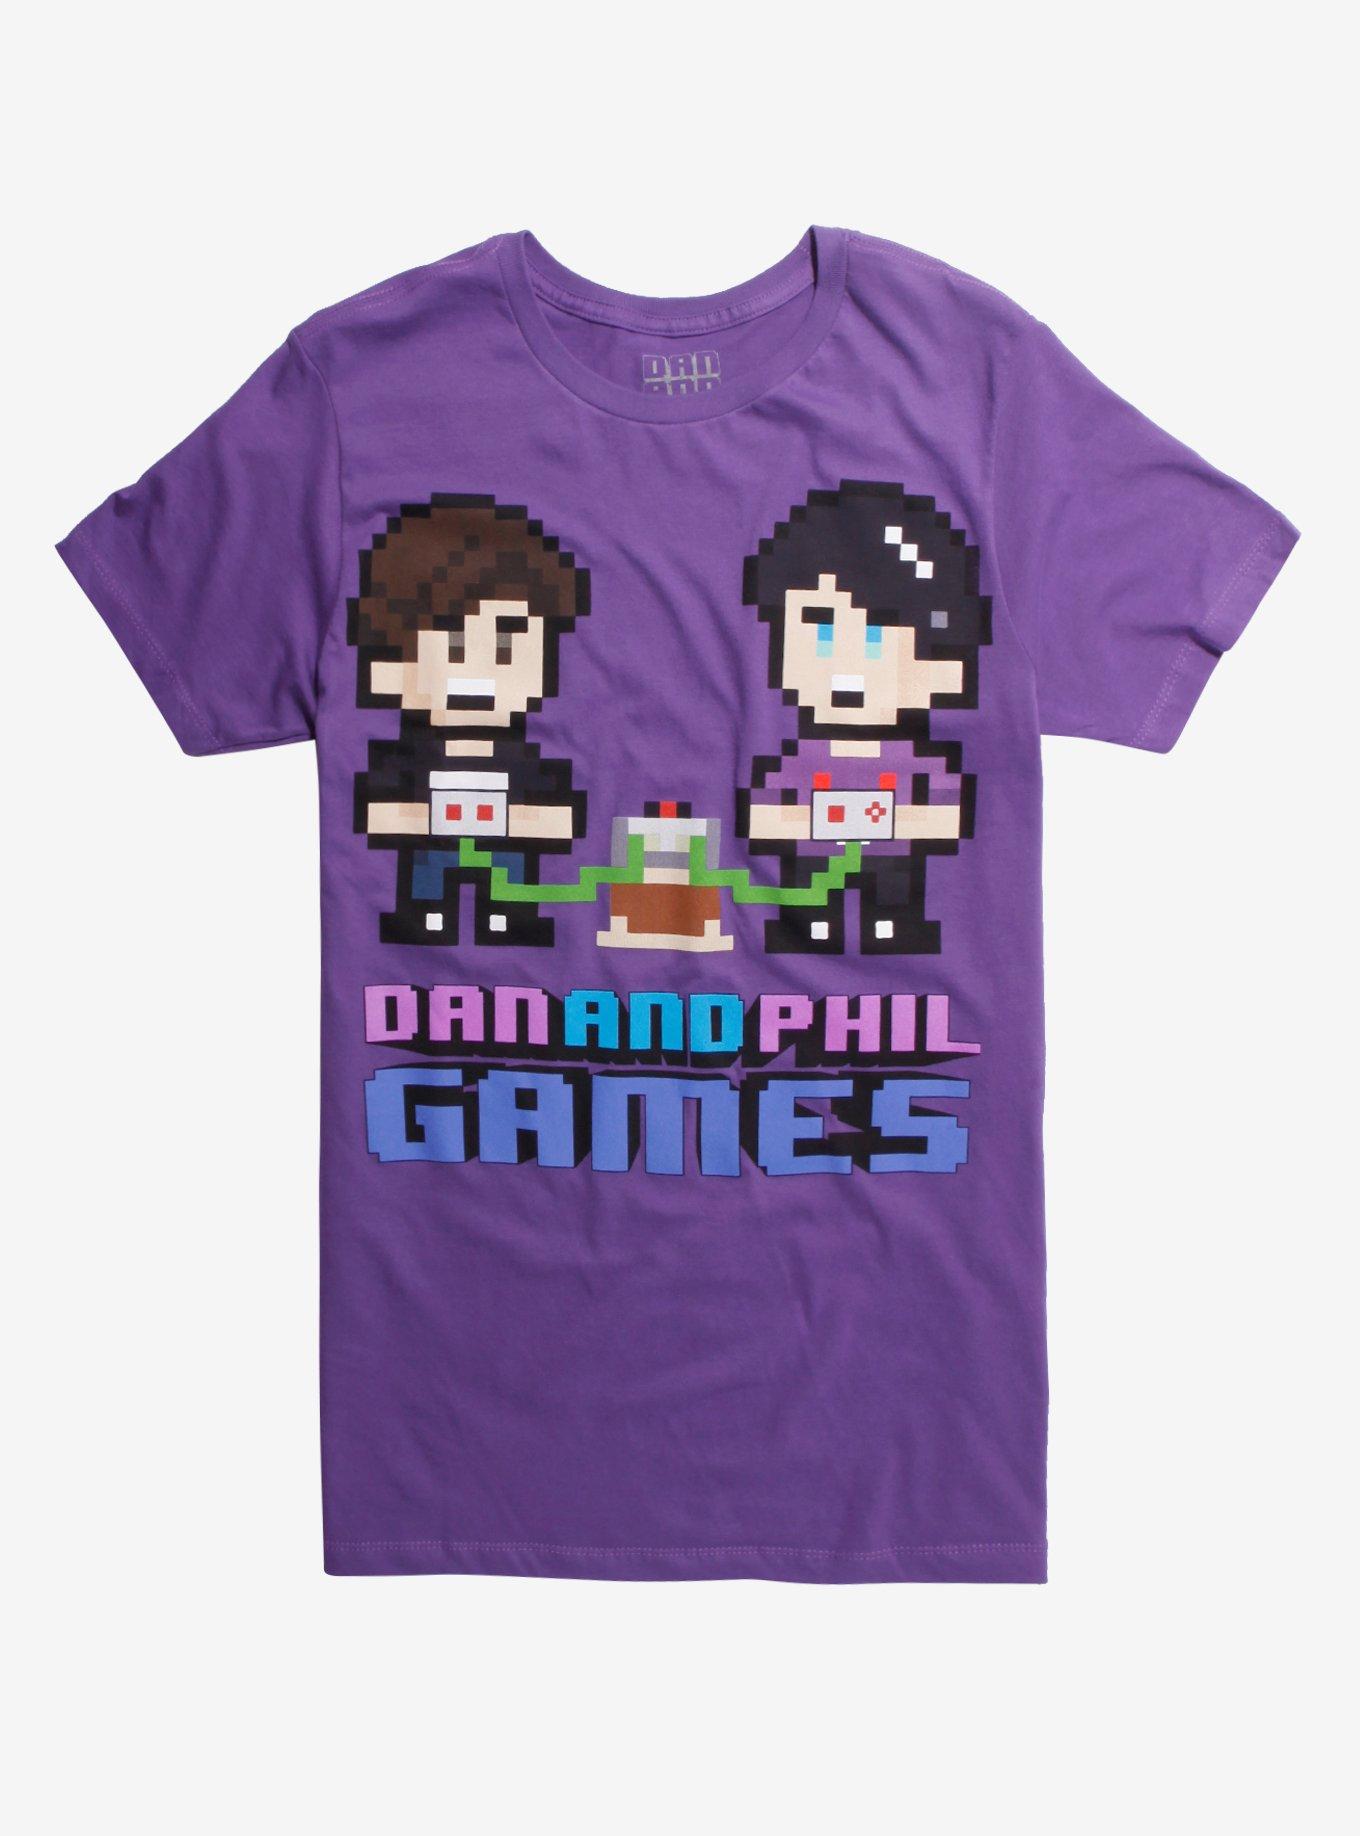 Dan And Phil Video Games 8-Bit T-Shirt Hot Topic Exclusive, PURPLE, hi-res